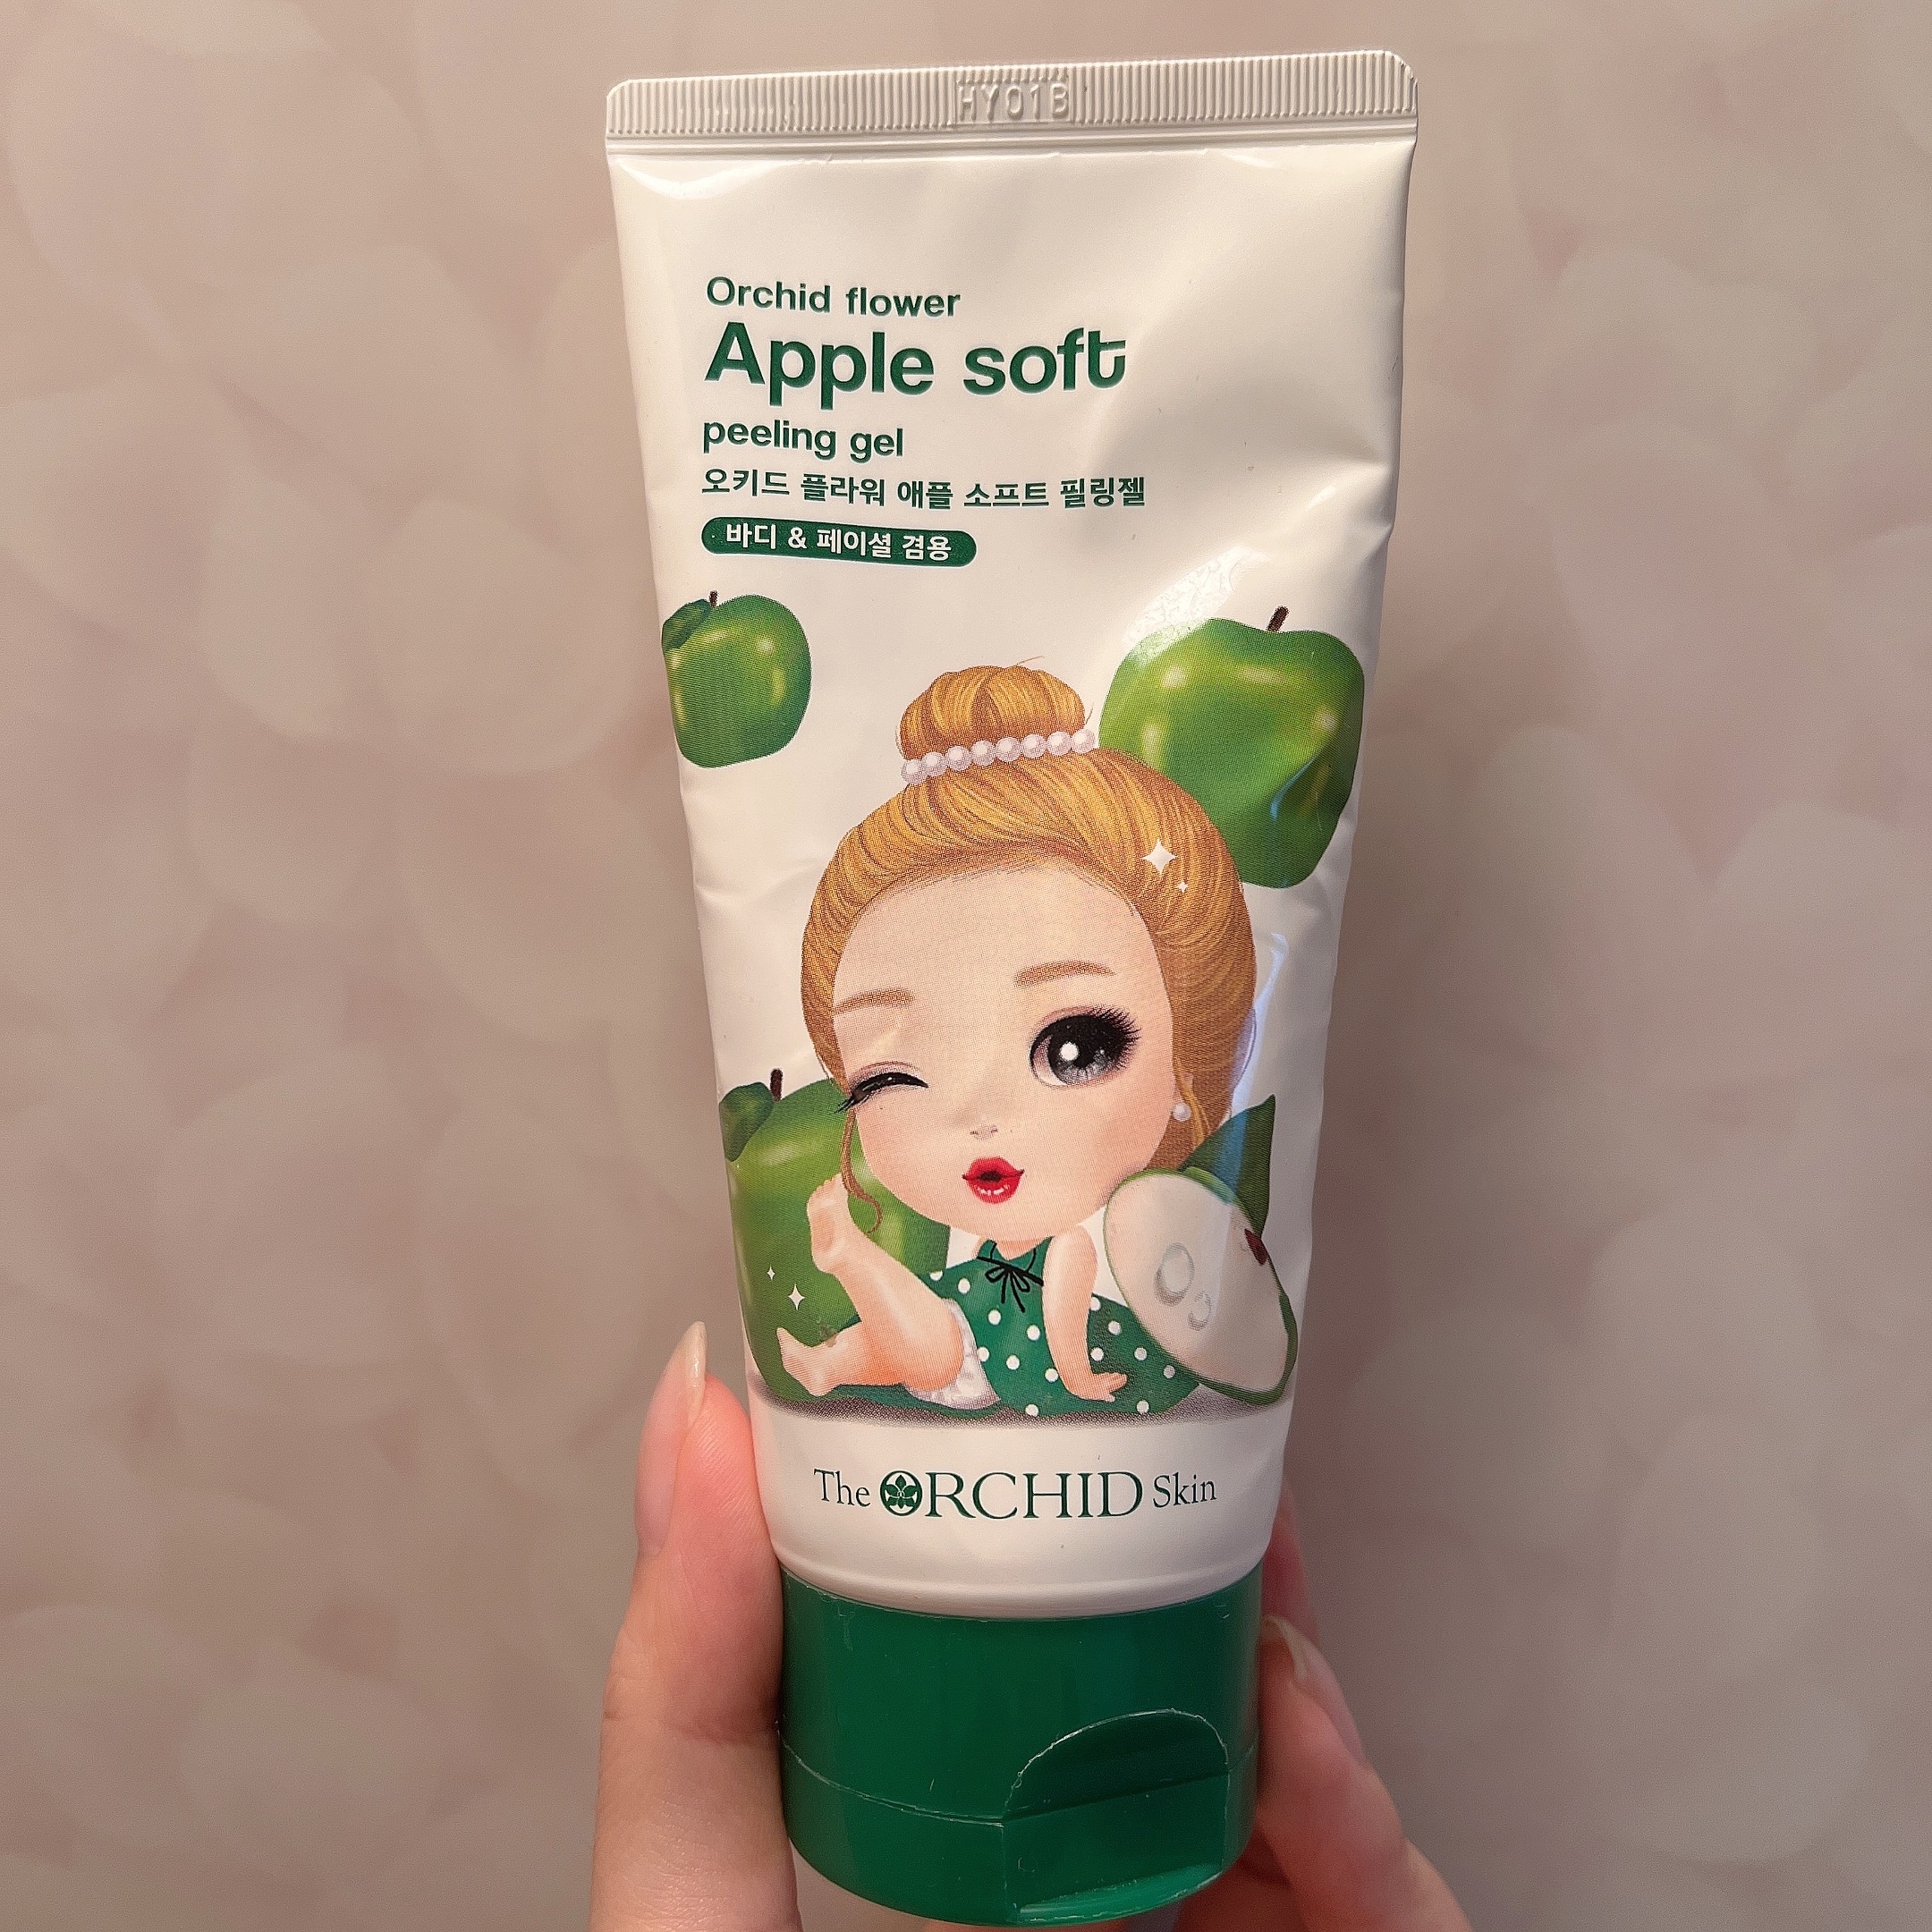 The orchid skin
apple soft peeling gelの良い点・メリットに関するyungさんの口コミ画像1